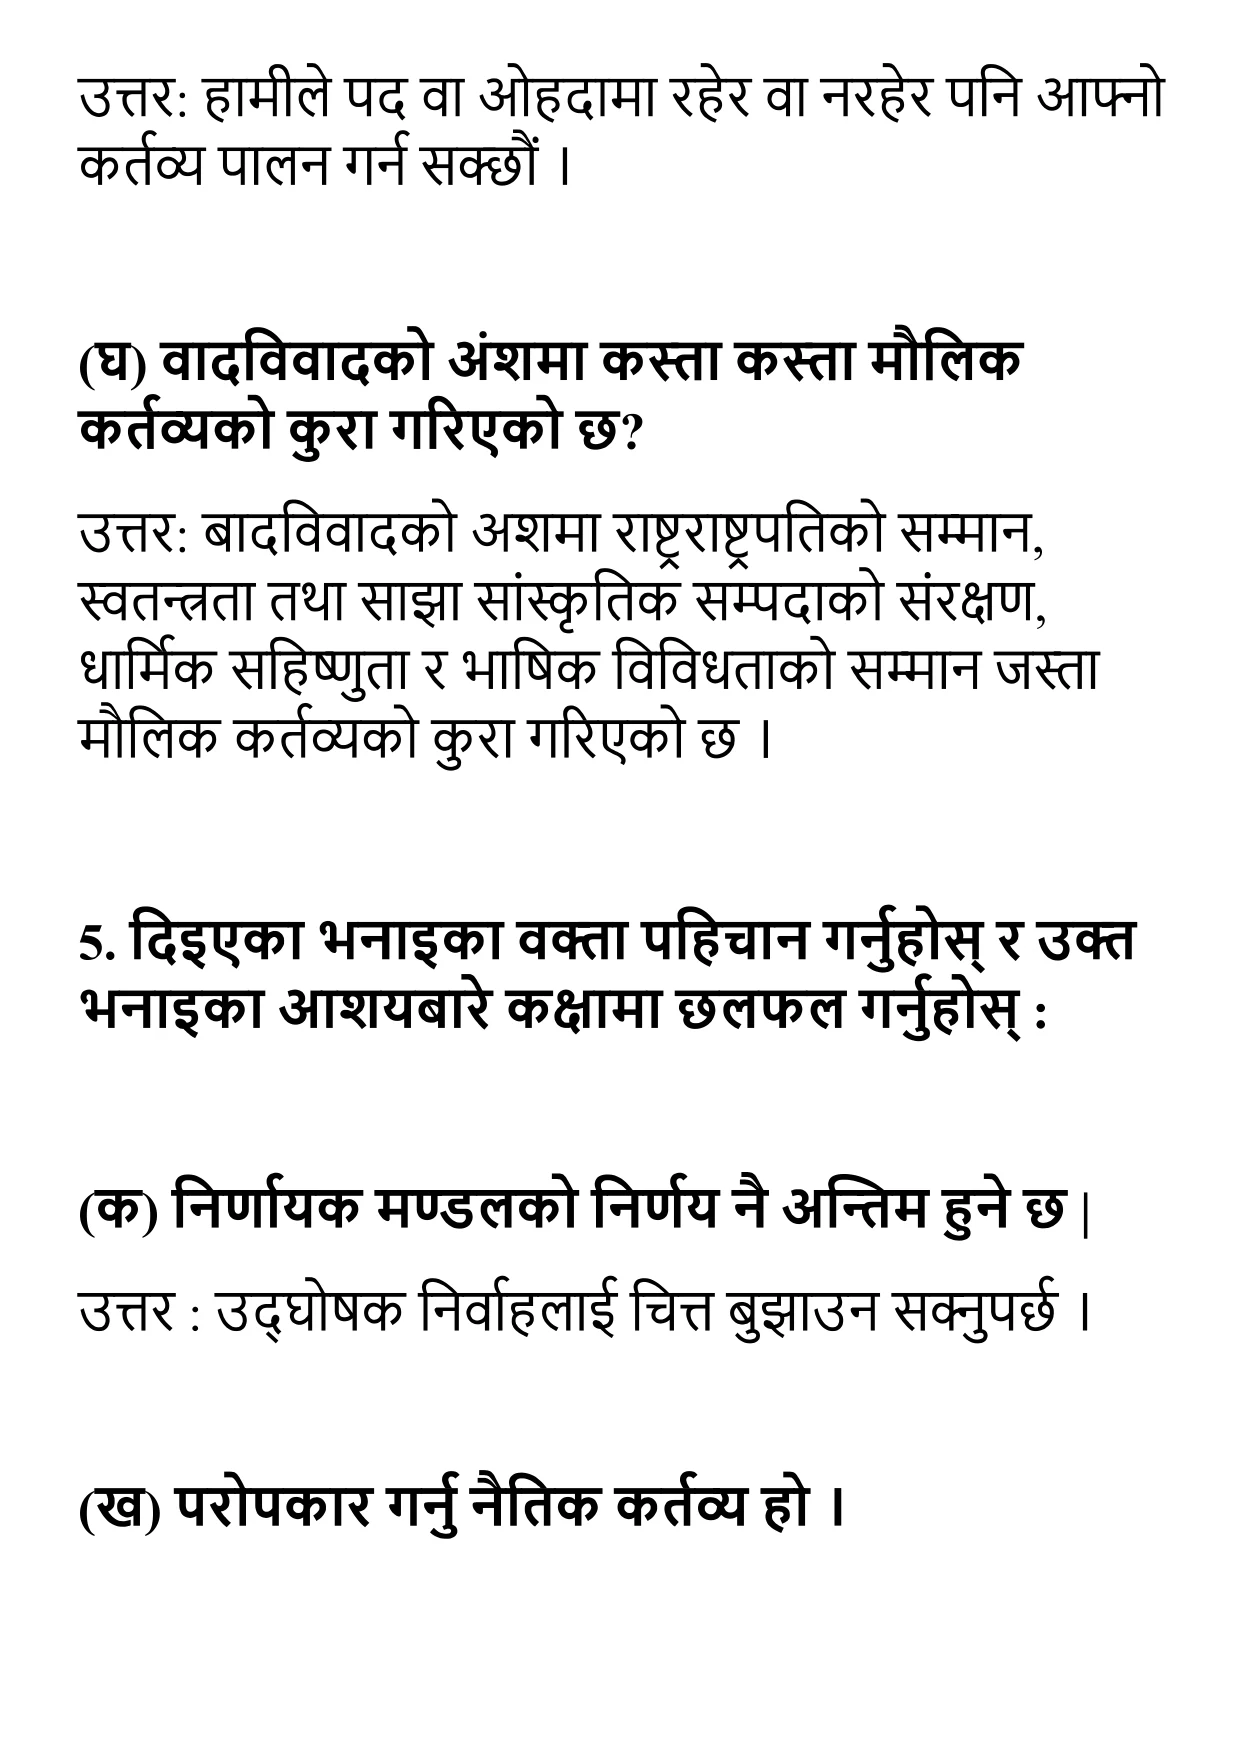 Adhikar Thulo ke Kartabya Thulo Exercise Question Answer: Class 10 Nepali Unit 6